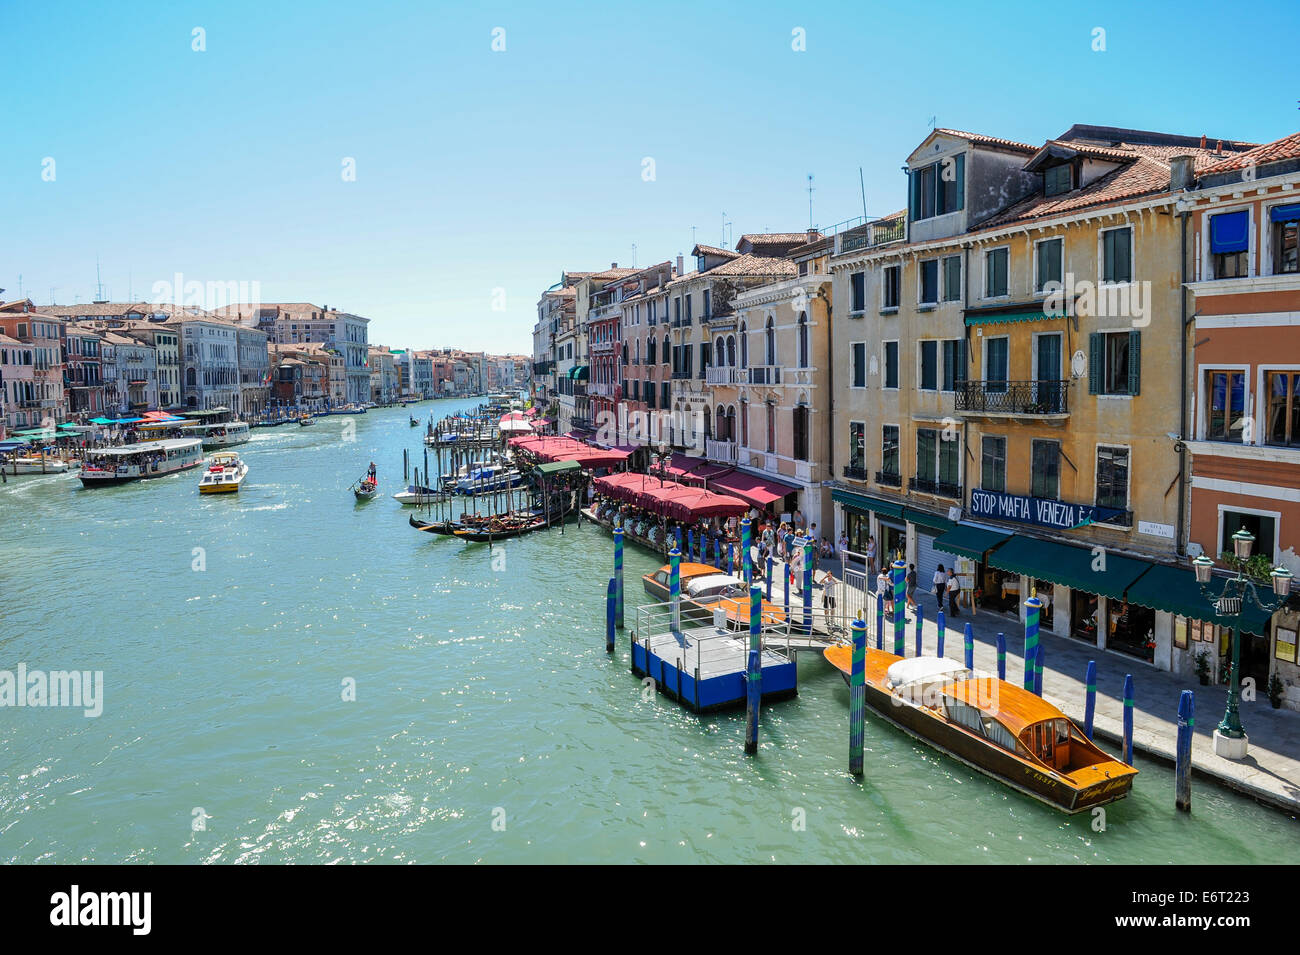 Barche, gondole e turisti lungo il canal grande e un segno, arrestare la mafia a Venezia. Foto Stock